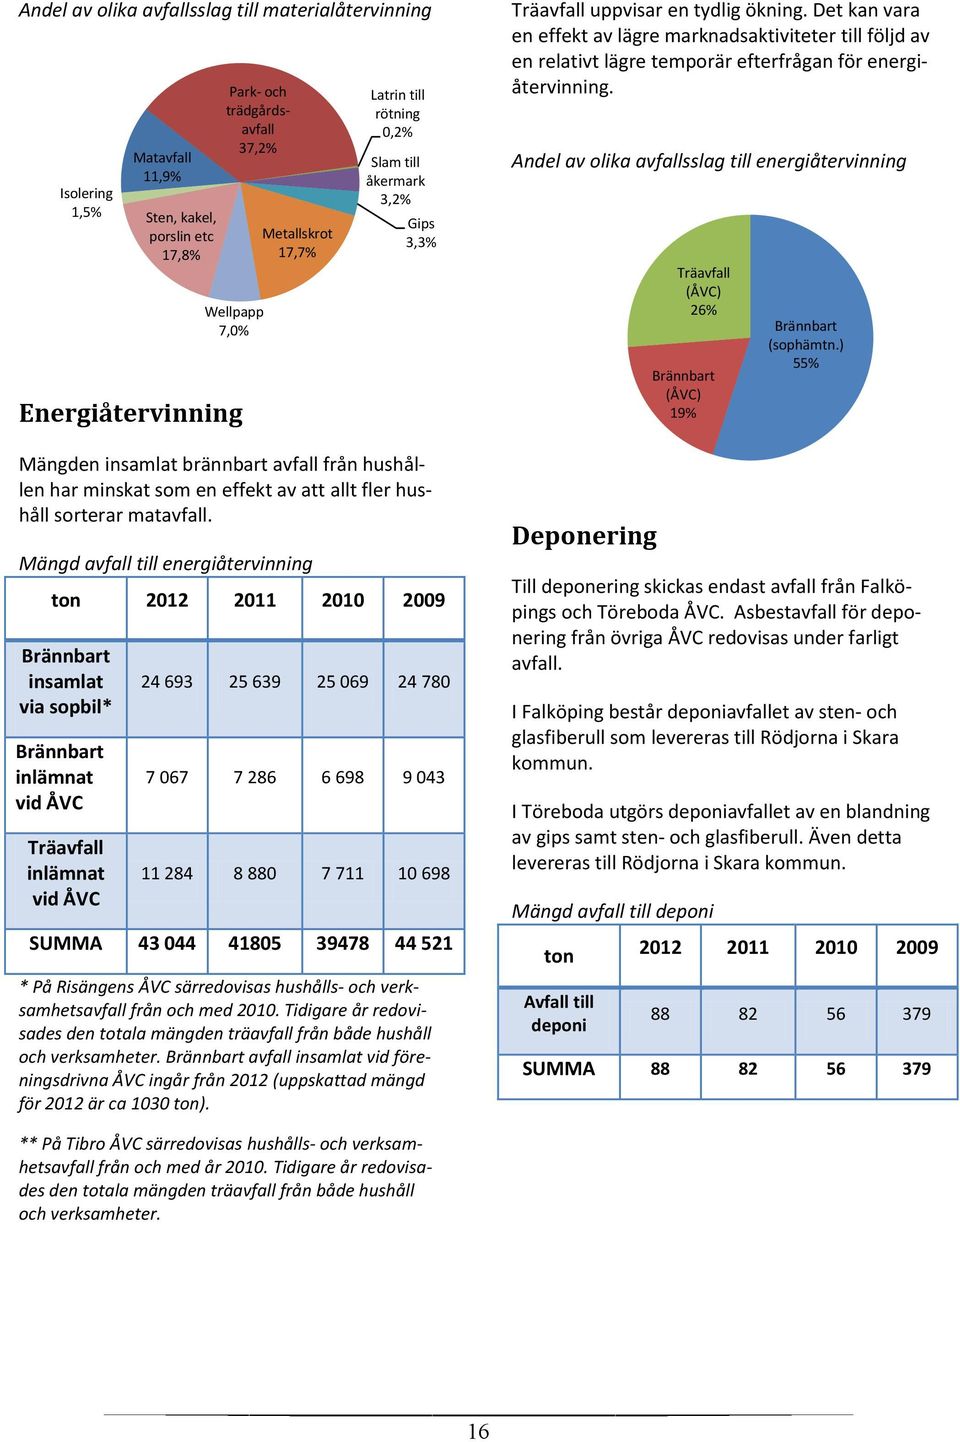 Mängd avfall till energiåtervinning ton 2012 2011 2010 2009 Brännbart insamlat via sopbil* Brännbart inlämnat vid ÅVC Träavfall inlämnat vid ÅVC Matavfall 11,9% Sten, kakel, porslin etc 17,8% Park-